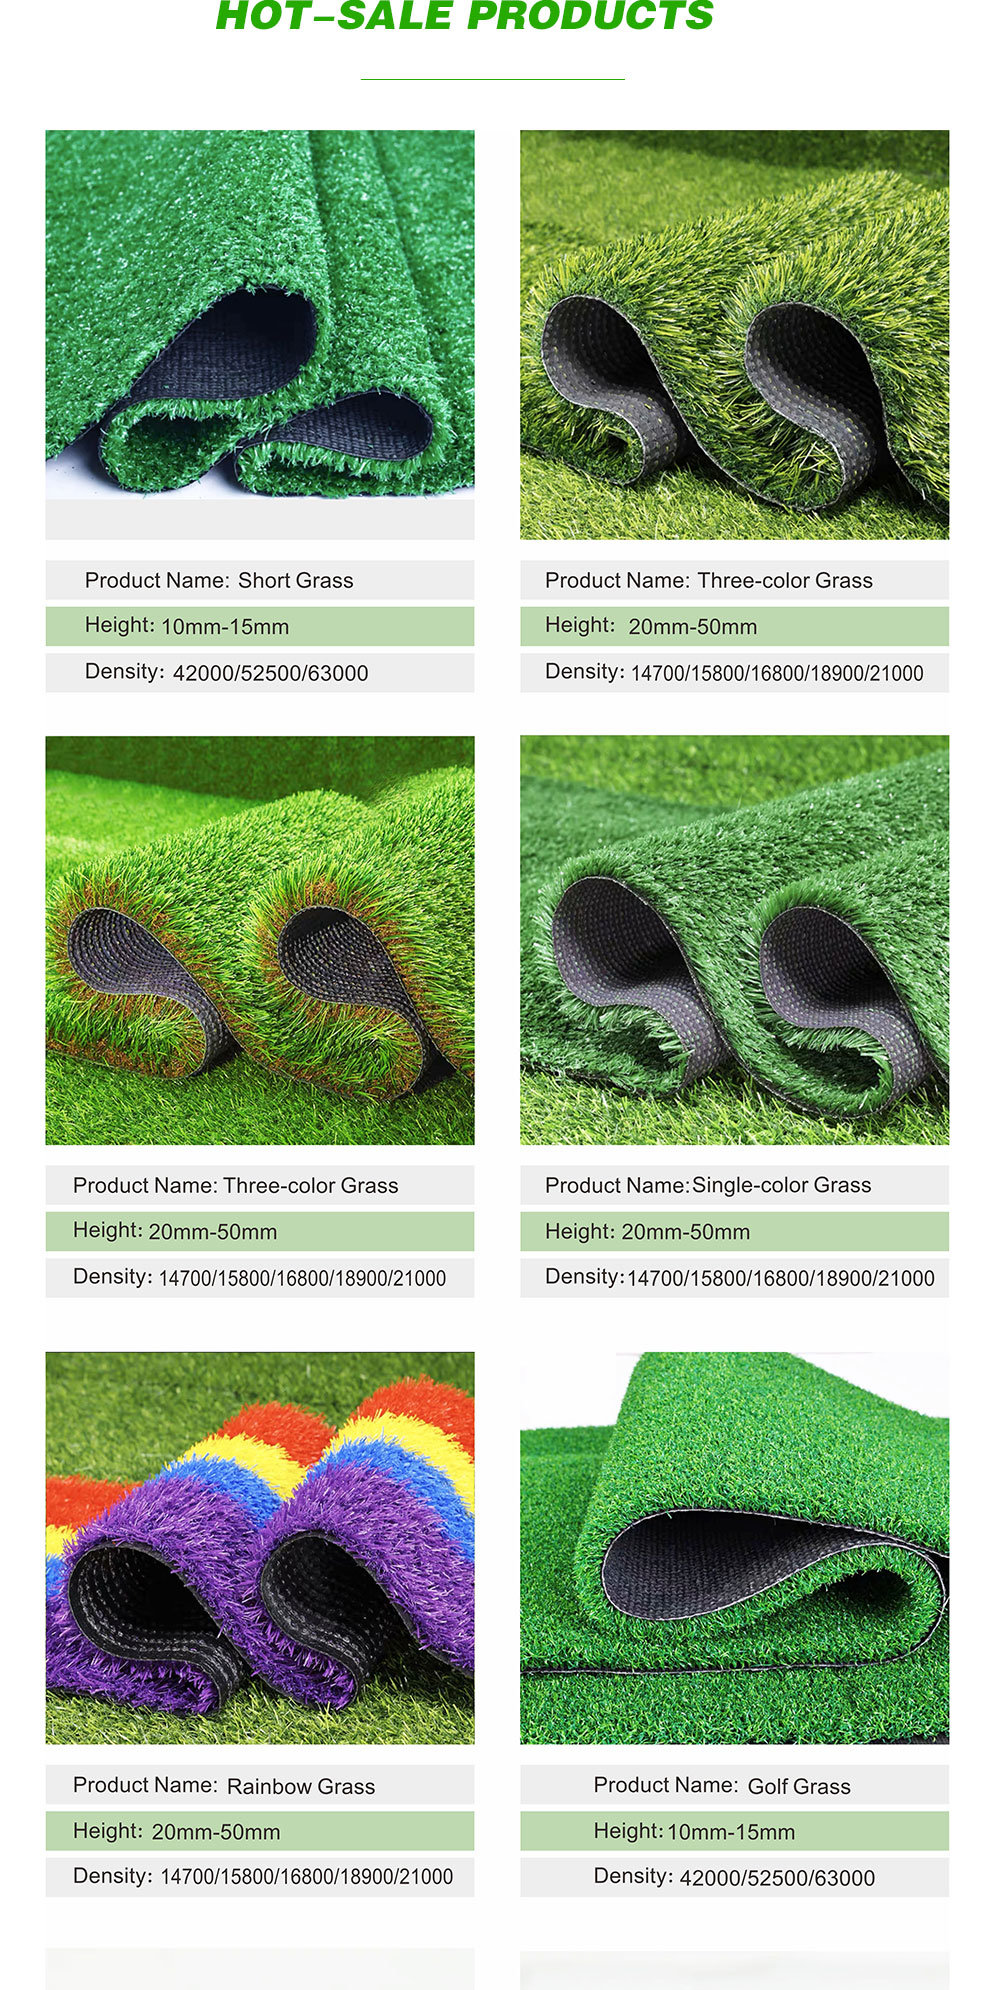 Natural Indoor Garden Artificial Turf 20mm 25mm 30mm 35mm 40mm Landscaping Outdoor Artificial Grass Carpet